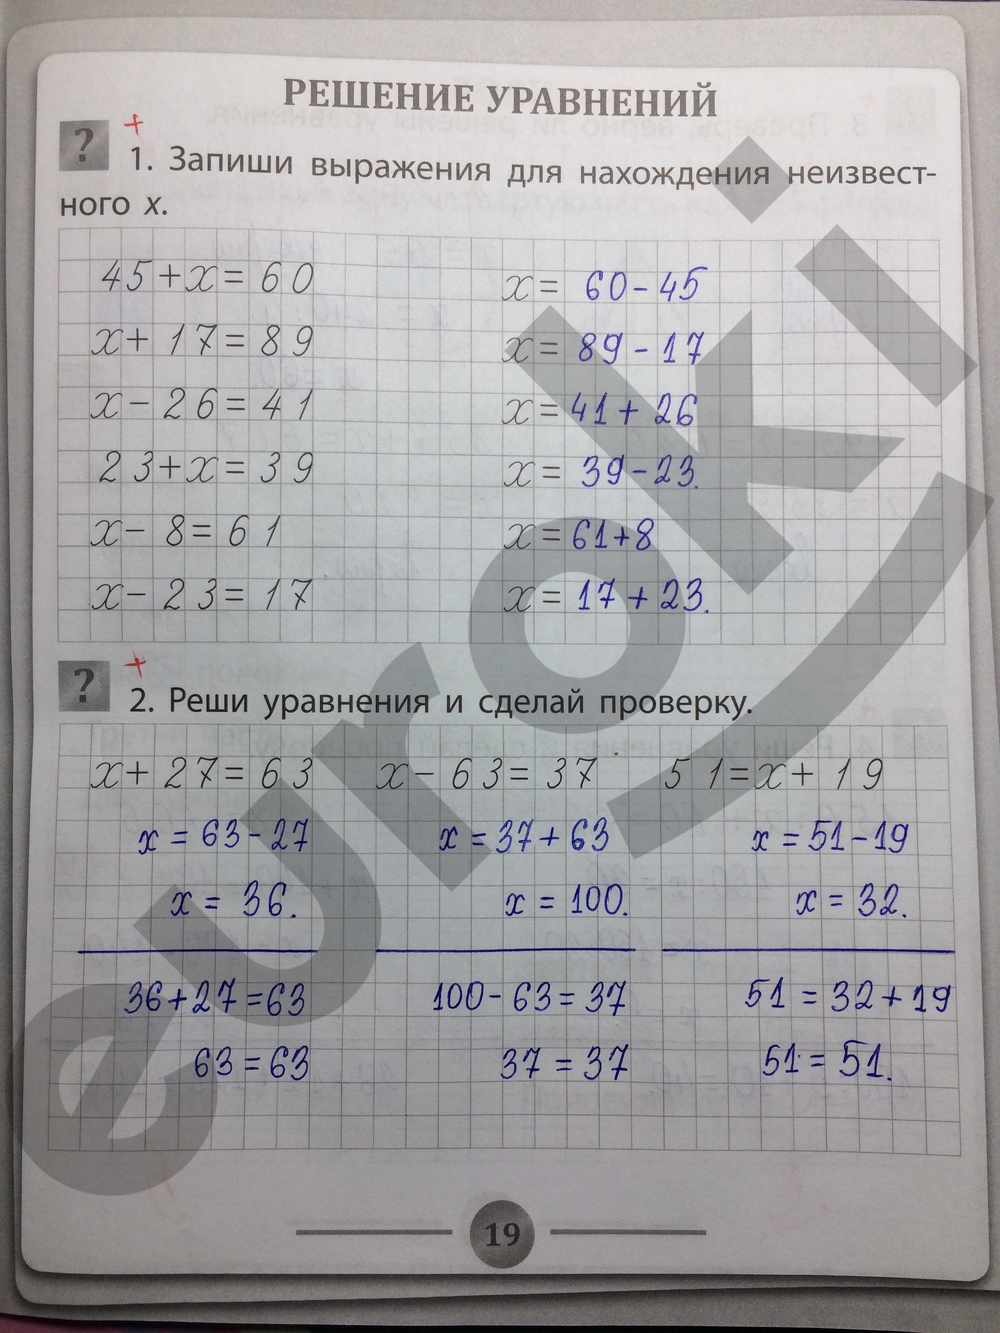 Страница 19 номер 7 и номер 3. Гдз по математике 3 класс тренажер. Реши уравнение и сделай проверку. Как делать проверку уровнени. Тетрадь тренажер по математике 3 класс ответы.